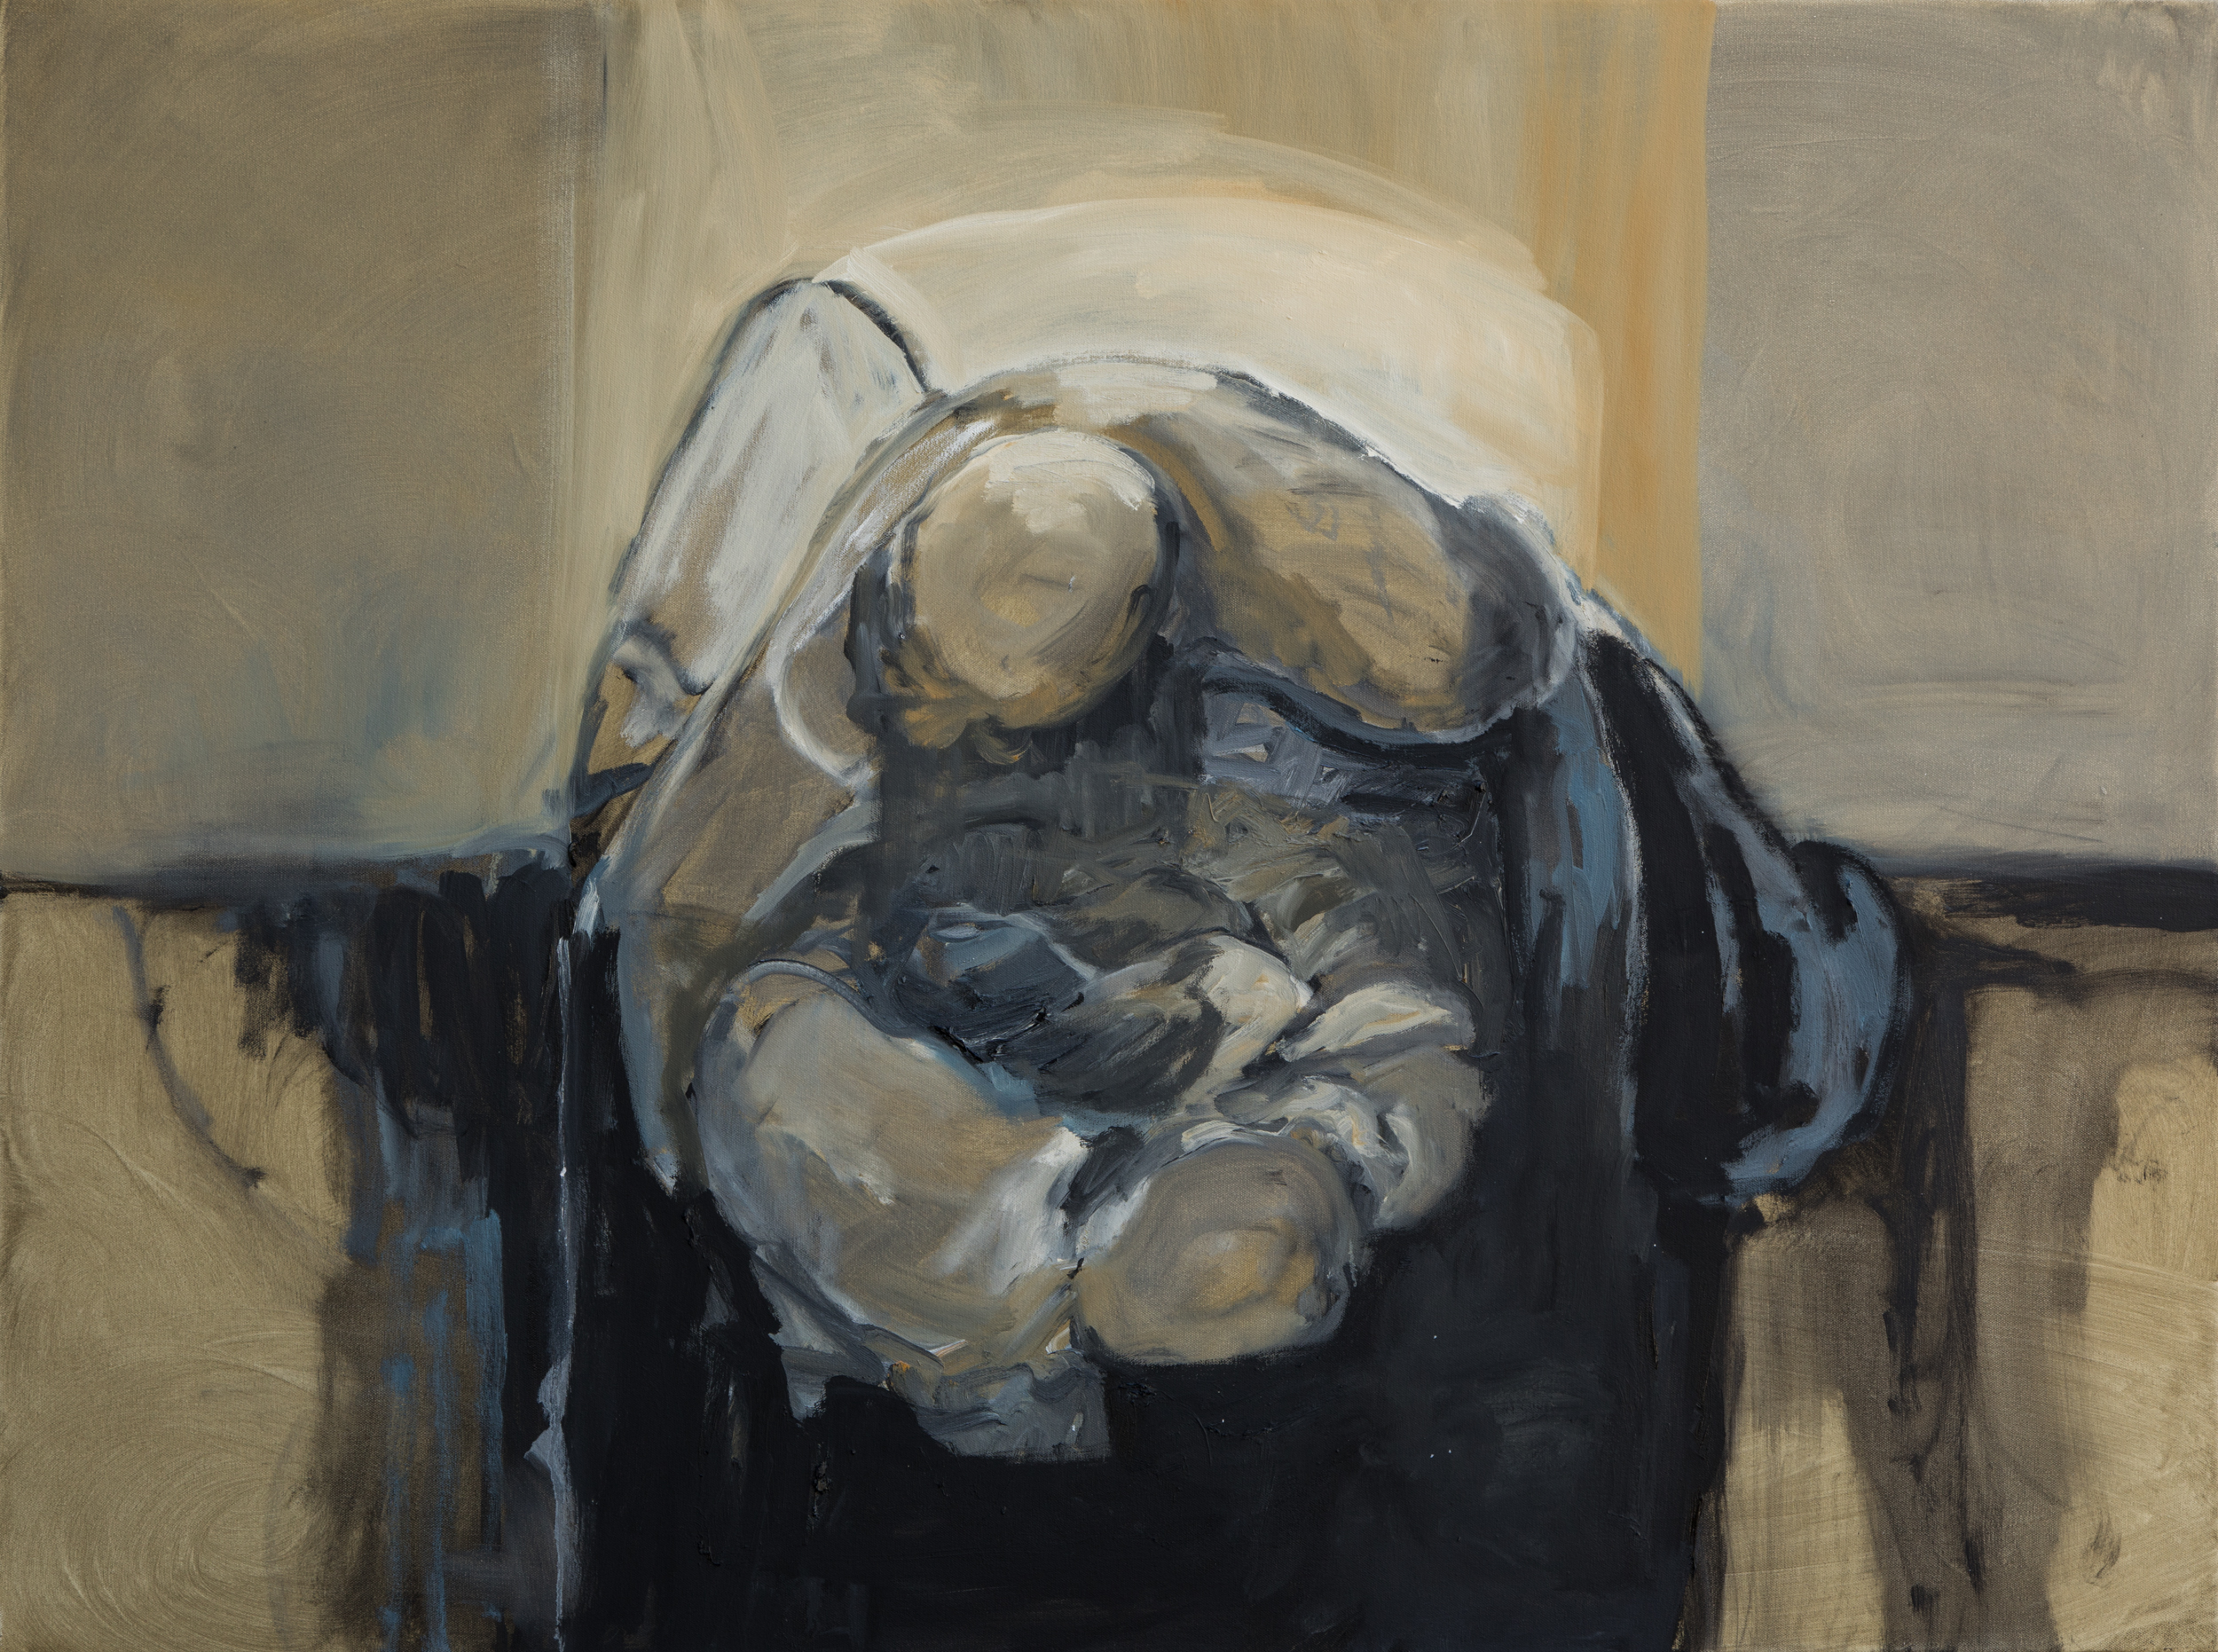 Awakening/Sleeping II 36"x 48"  Oil on Canvas  2018